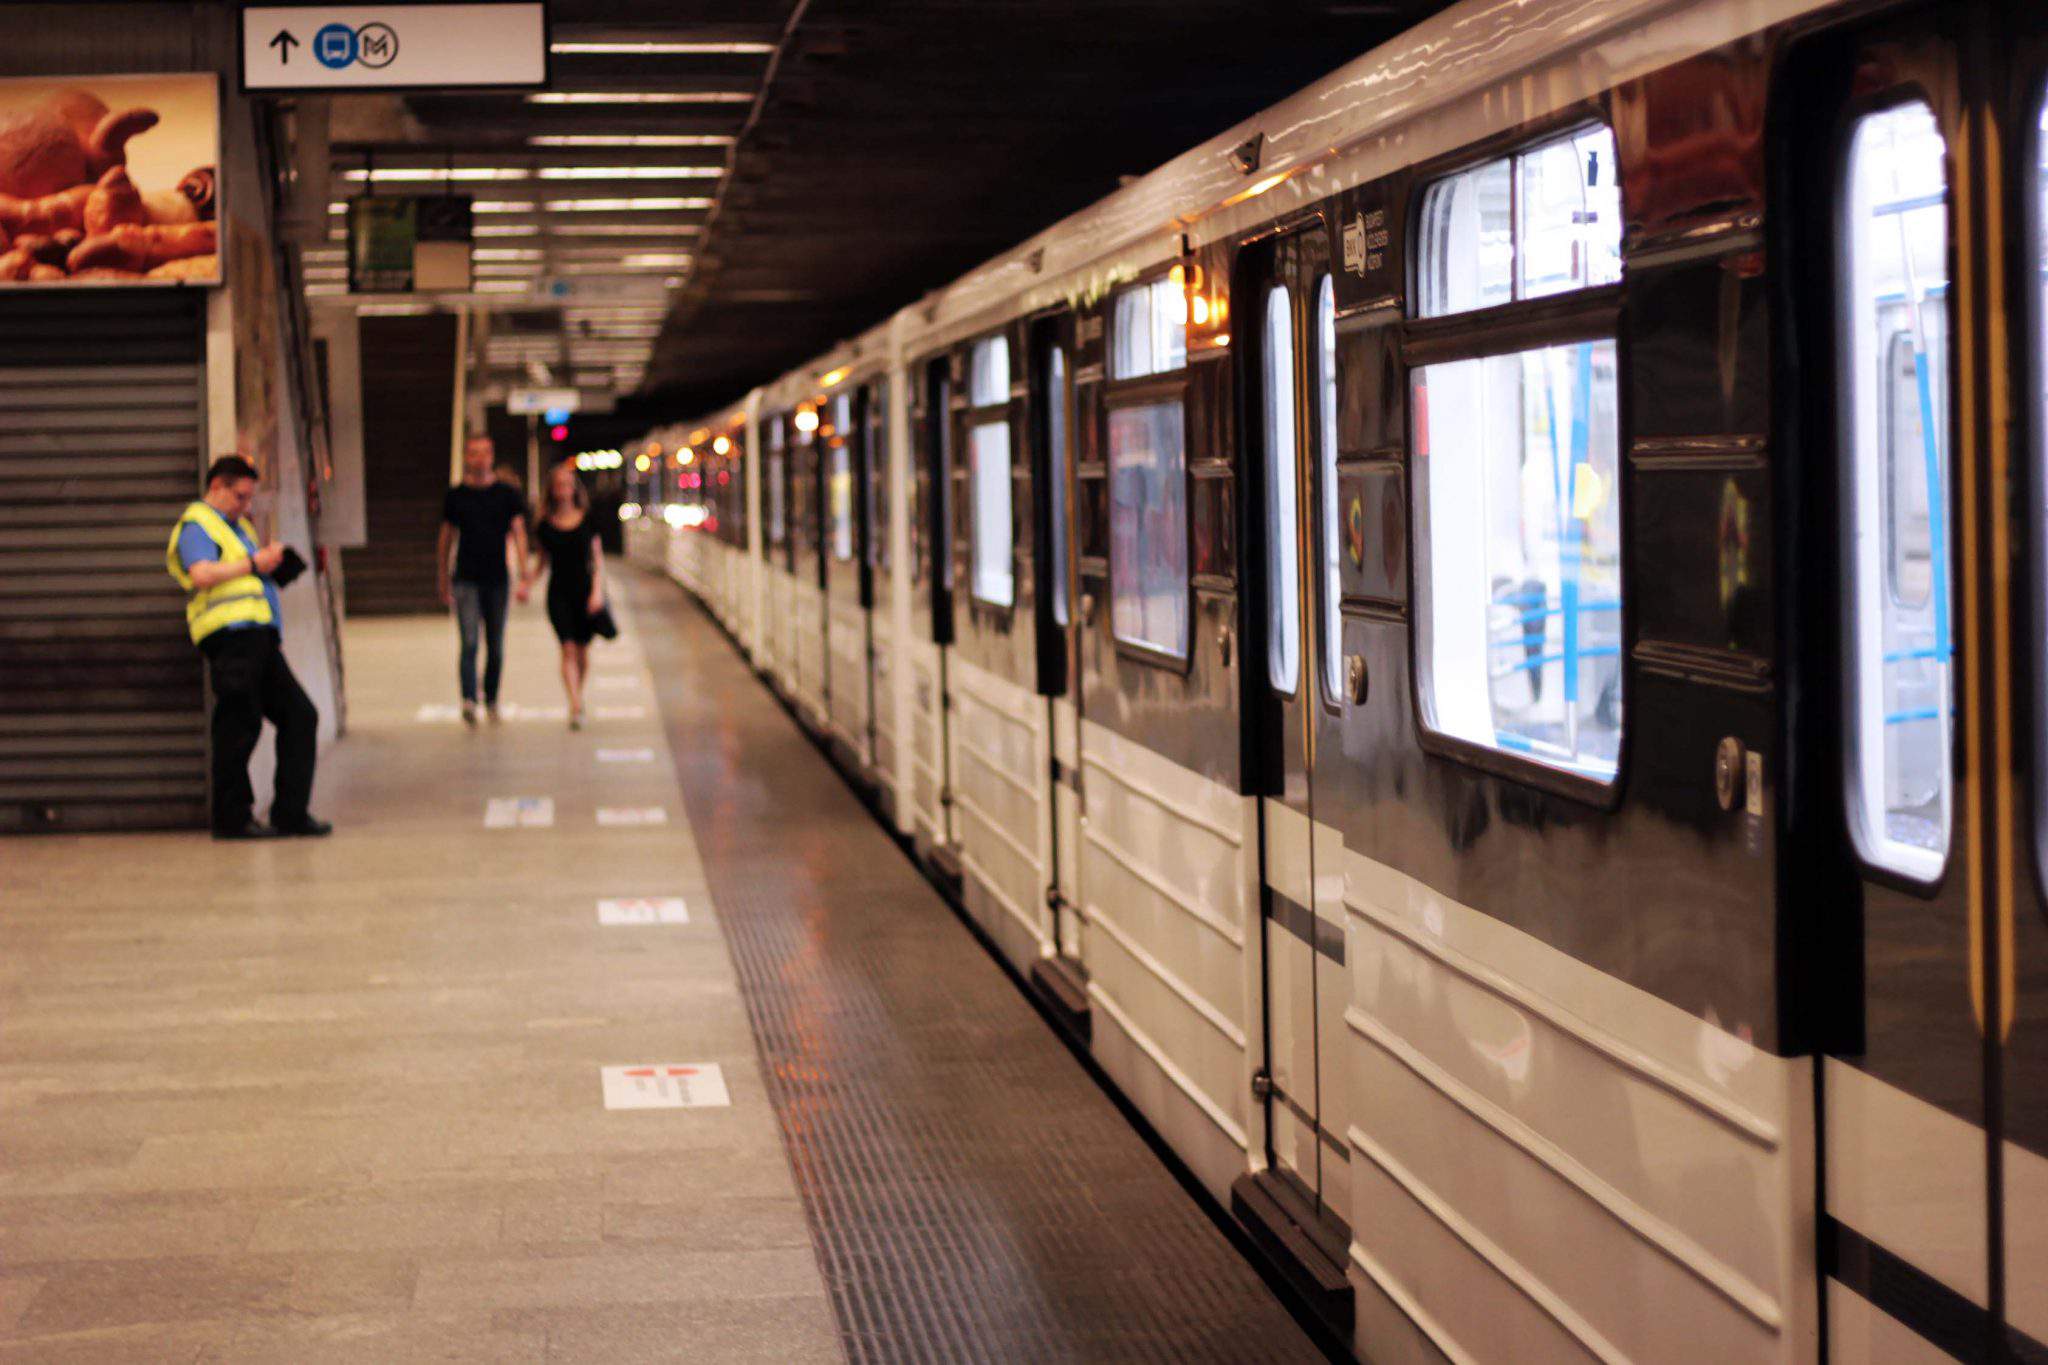 metrou m3 bkk bkv budapest